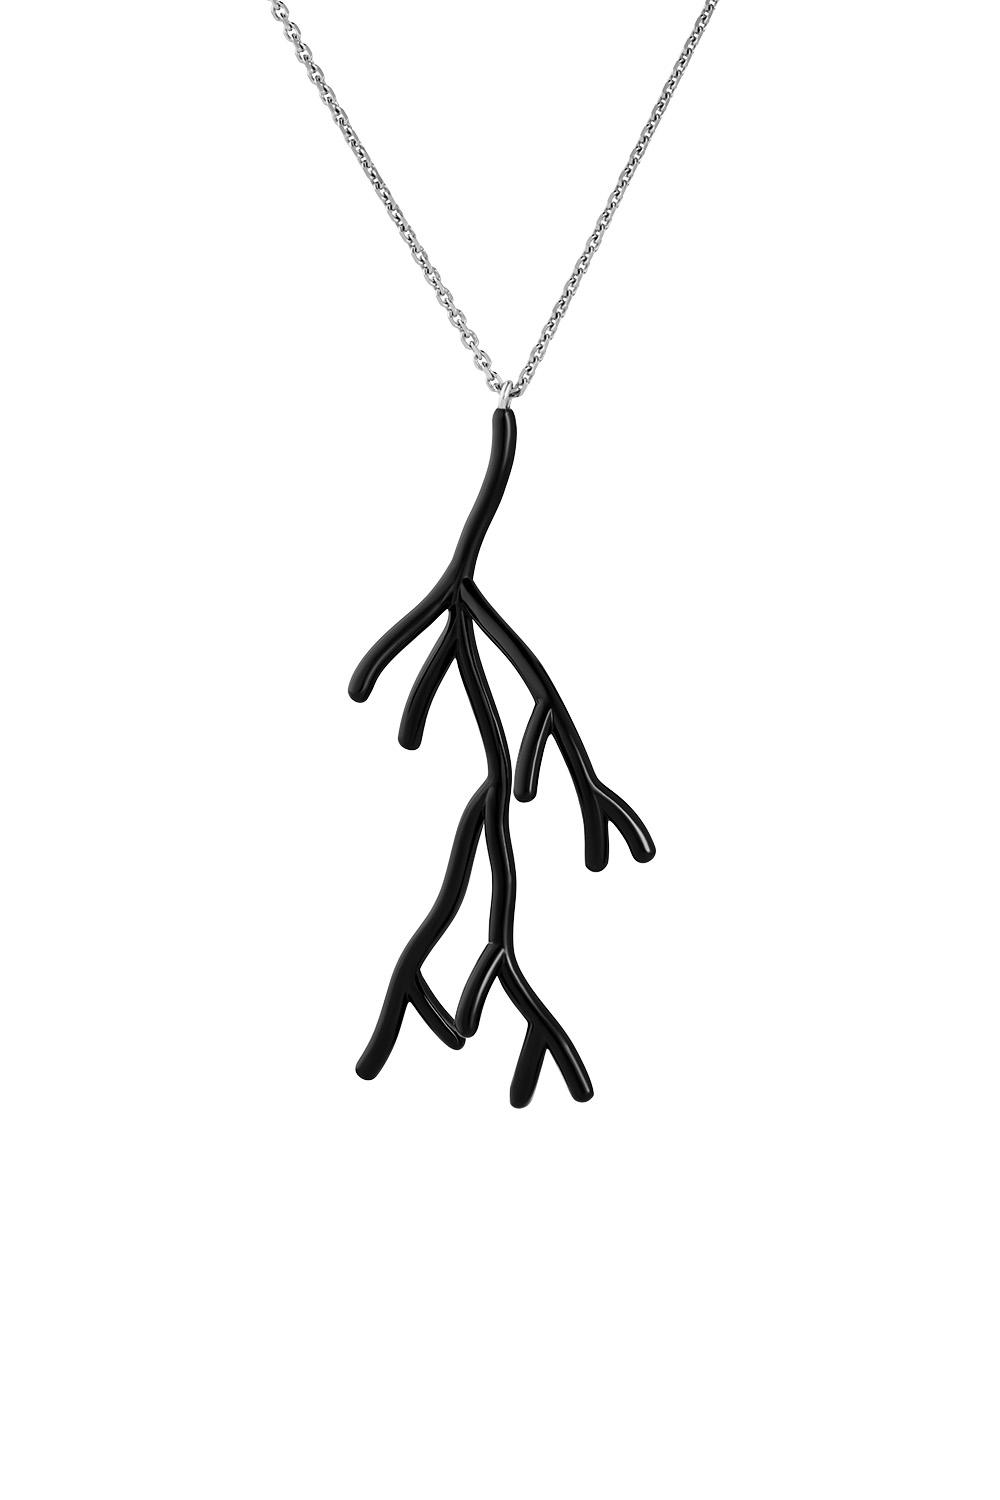 Koral Black Dendrite Pendant Necklace